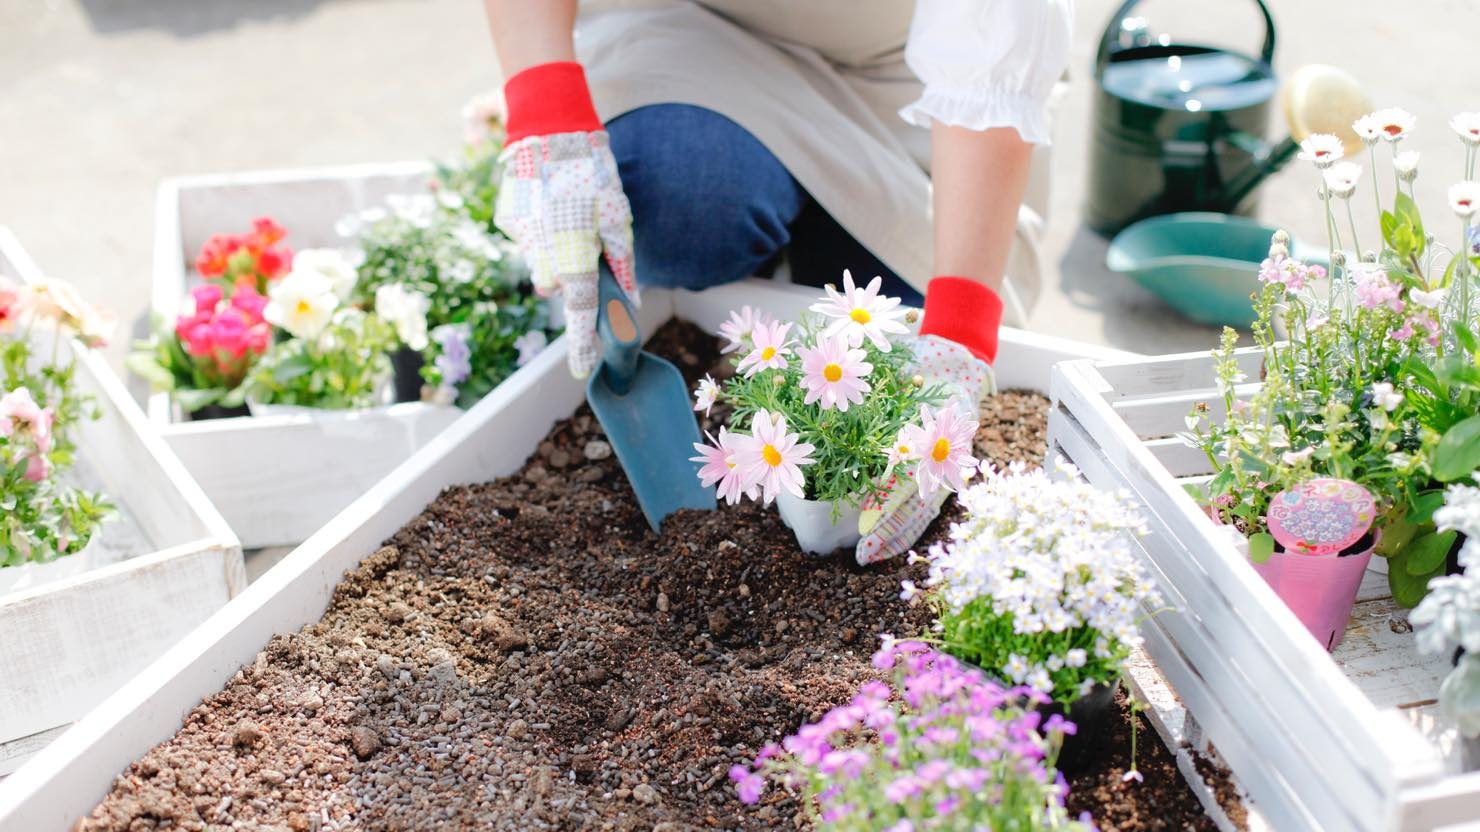 おしゃれなミニ花壇を自宅で作ろう ミニ花壇におすすめの花と準備するもの 暮らし方から物件探し